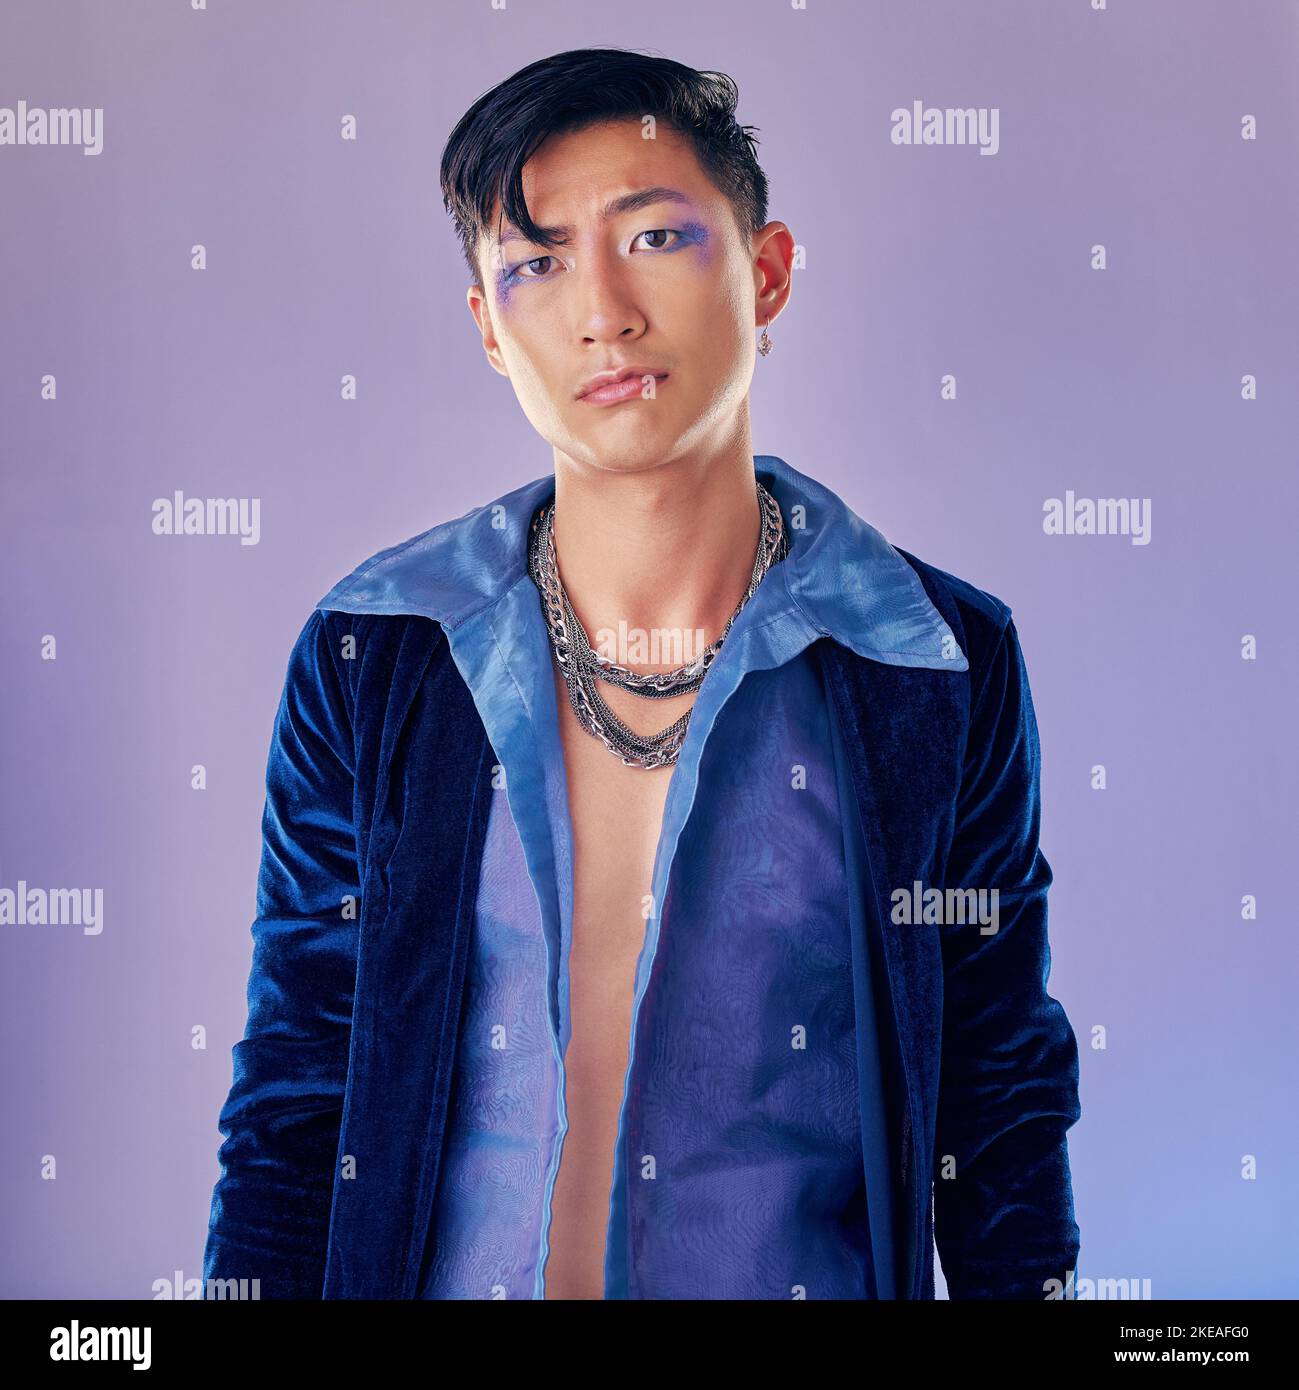 Asiatischer Mann, Make-up und Punk Mode für Portrait im Studio mit Cyberpunk, kreativem oder ästhetischem Gesicht. Futuristisches Modell, Metallschmuck oder Kleidung Stockfoto